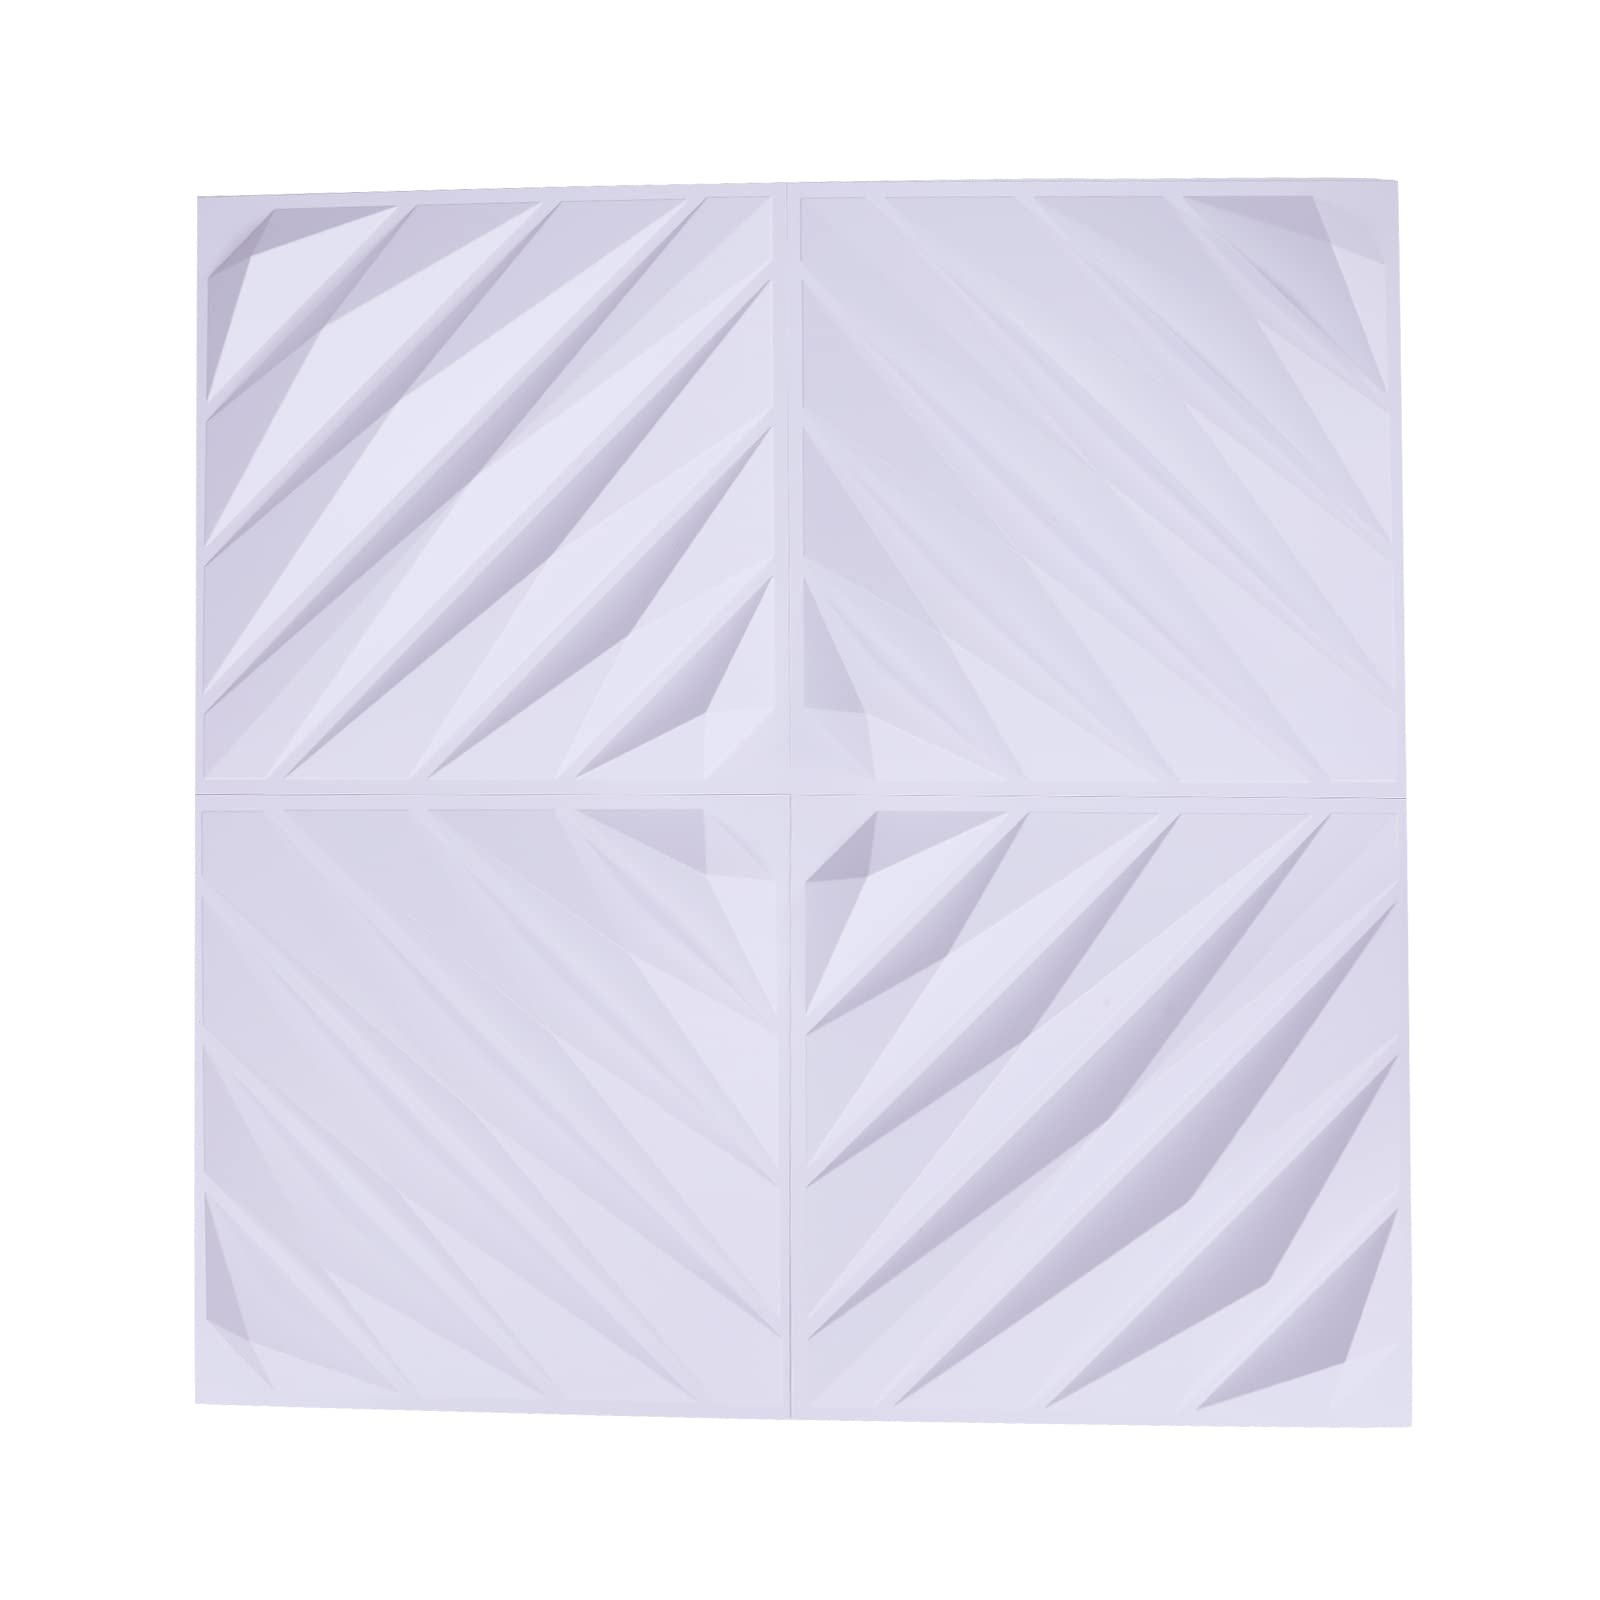 12 pannelli da parete 3D in PVC con diamante